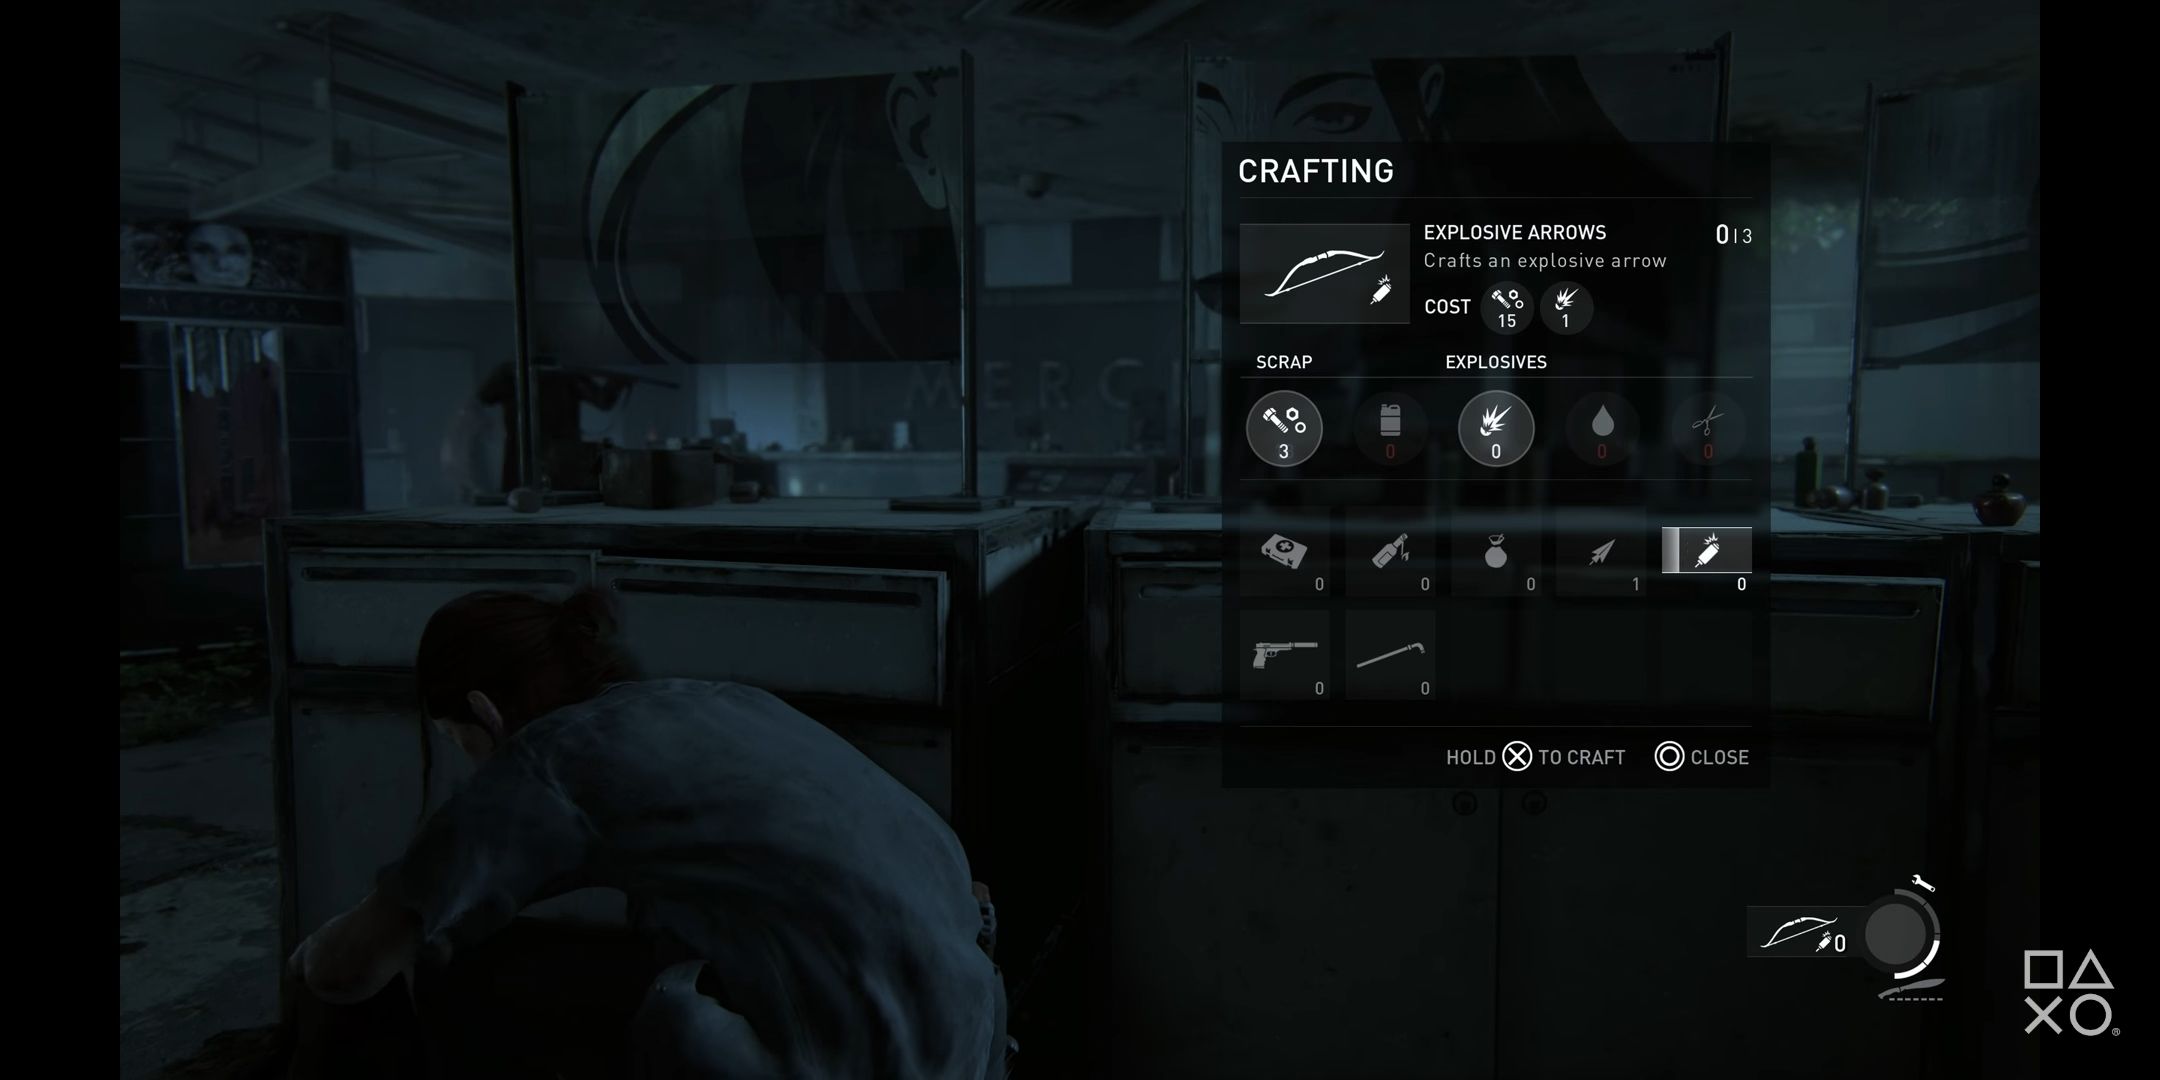 Ellie crafting menu in The Last of Us 2 gameplay trailer/demo